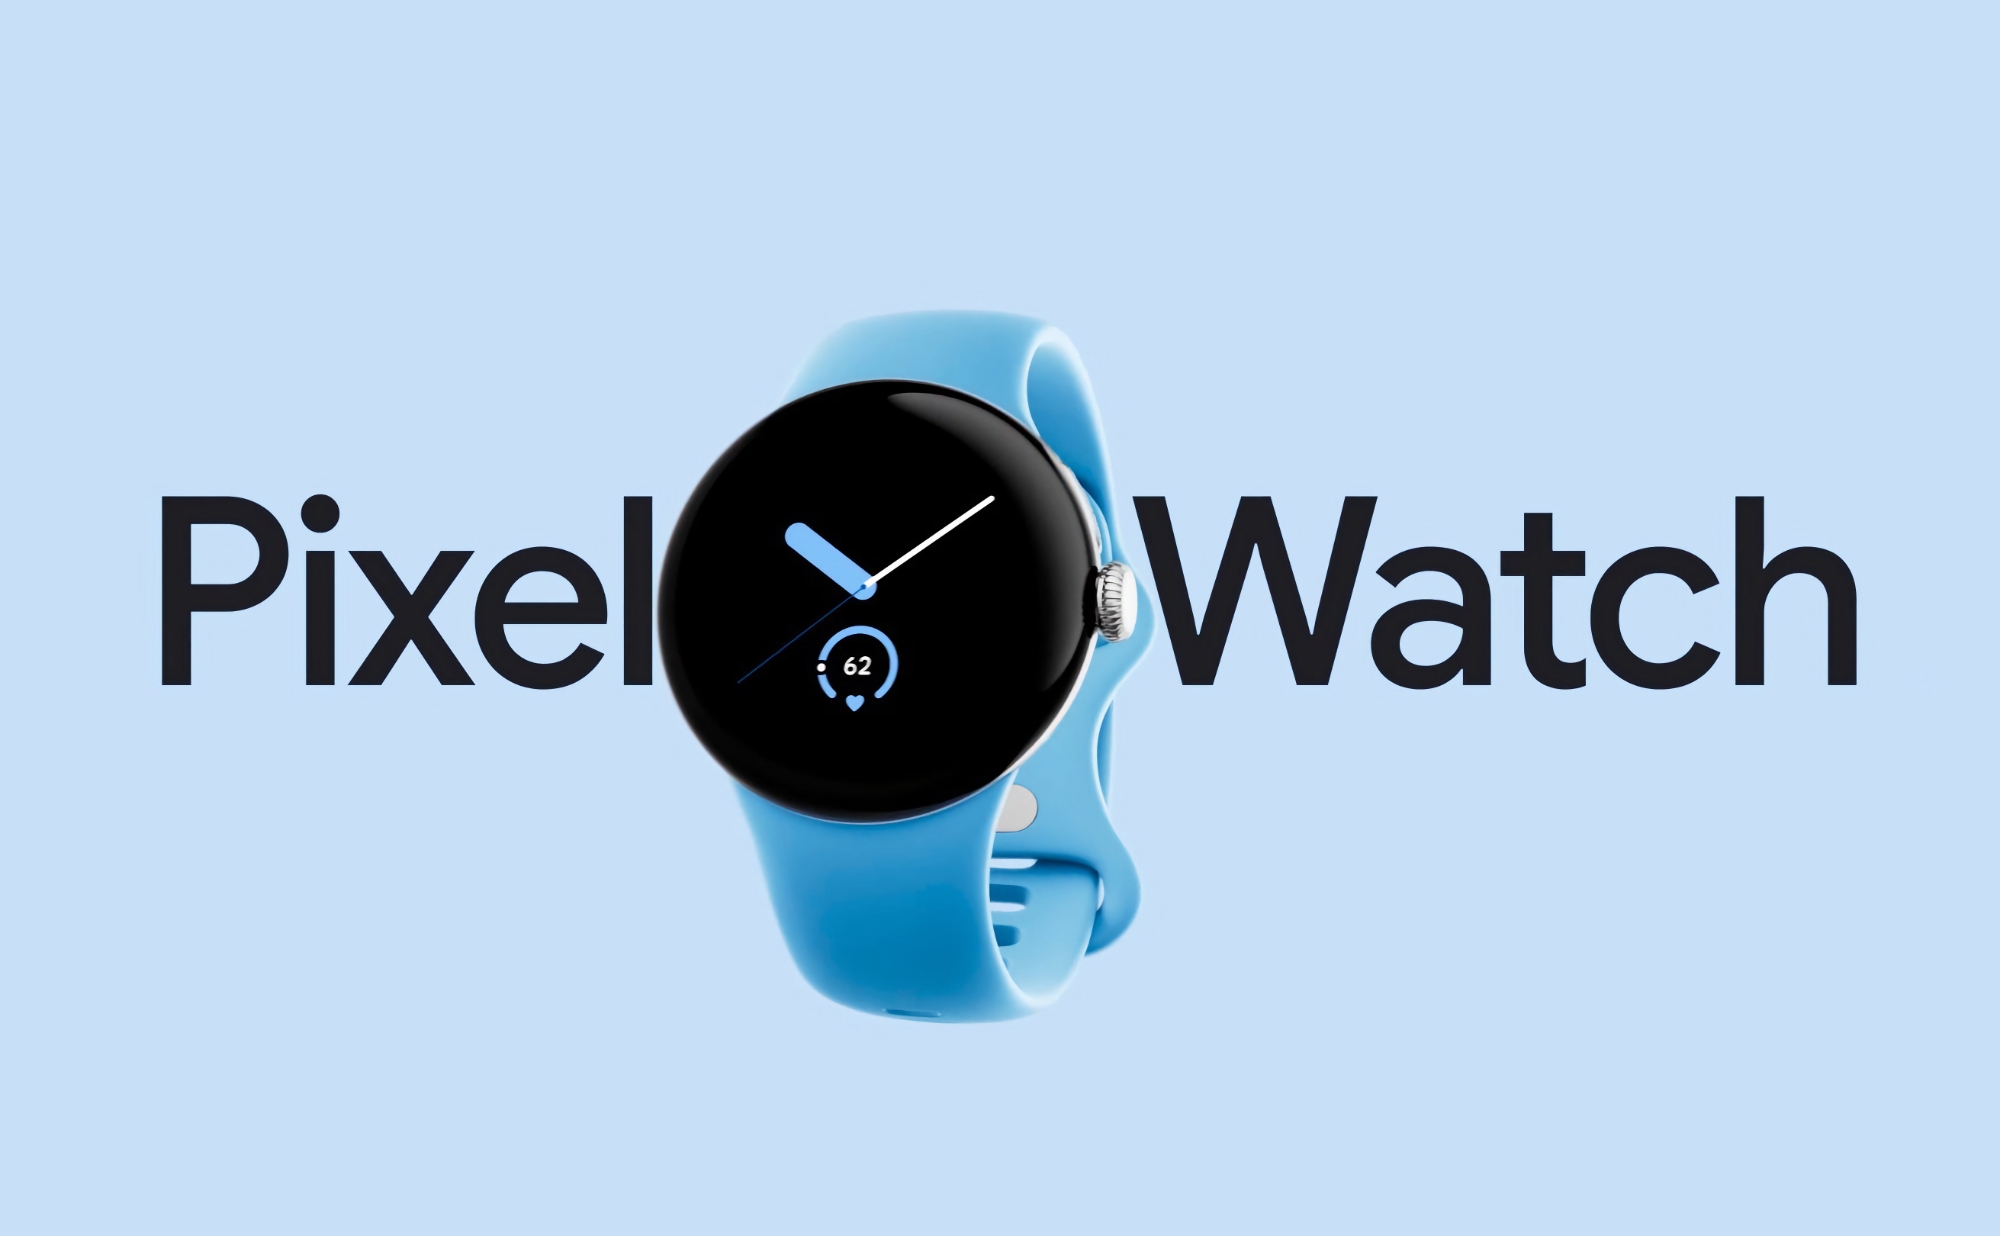 El Google Pixel Watch original con Wi-Fi está disponible en Amazon a un precio rebajado de 74 dólares